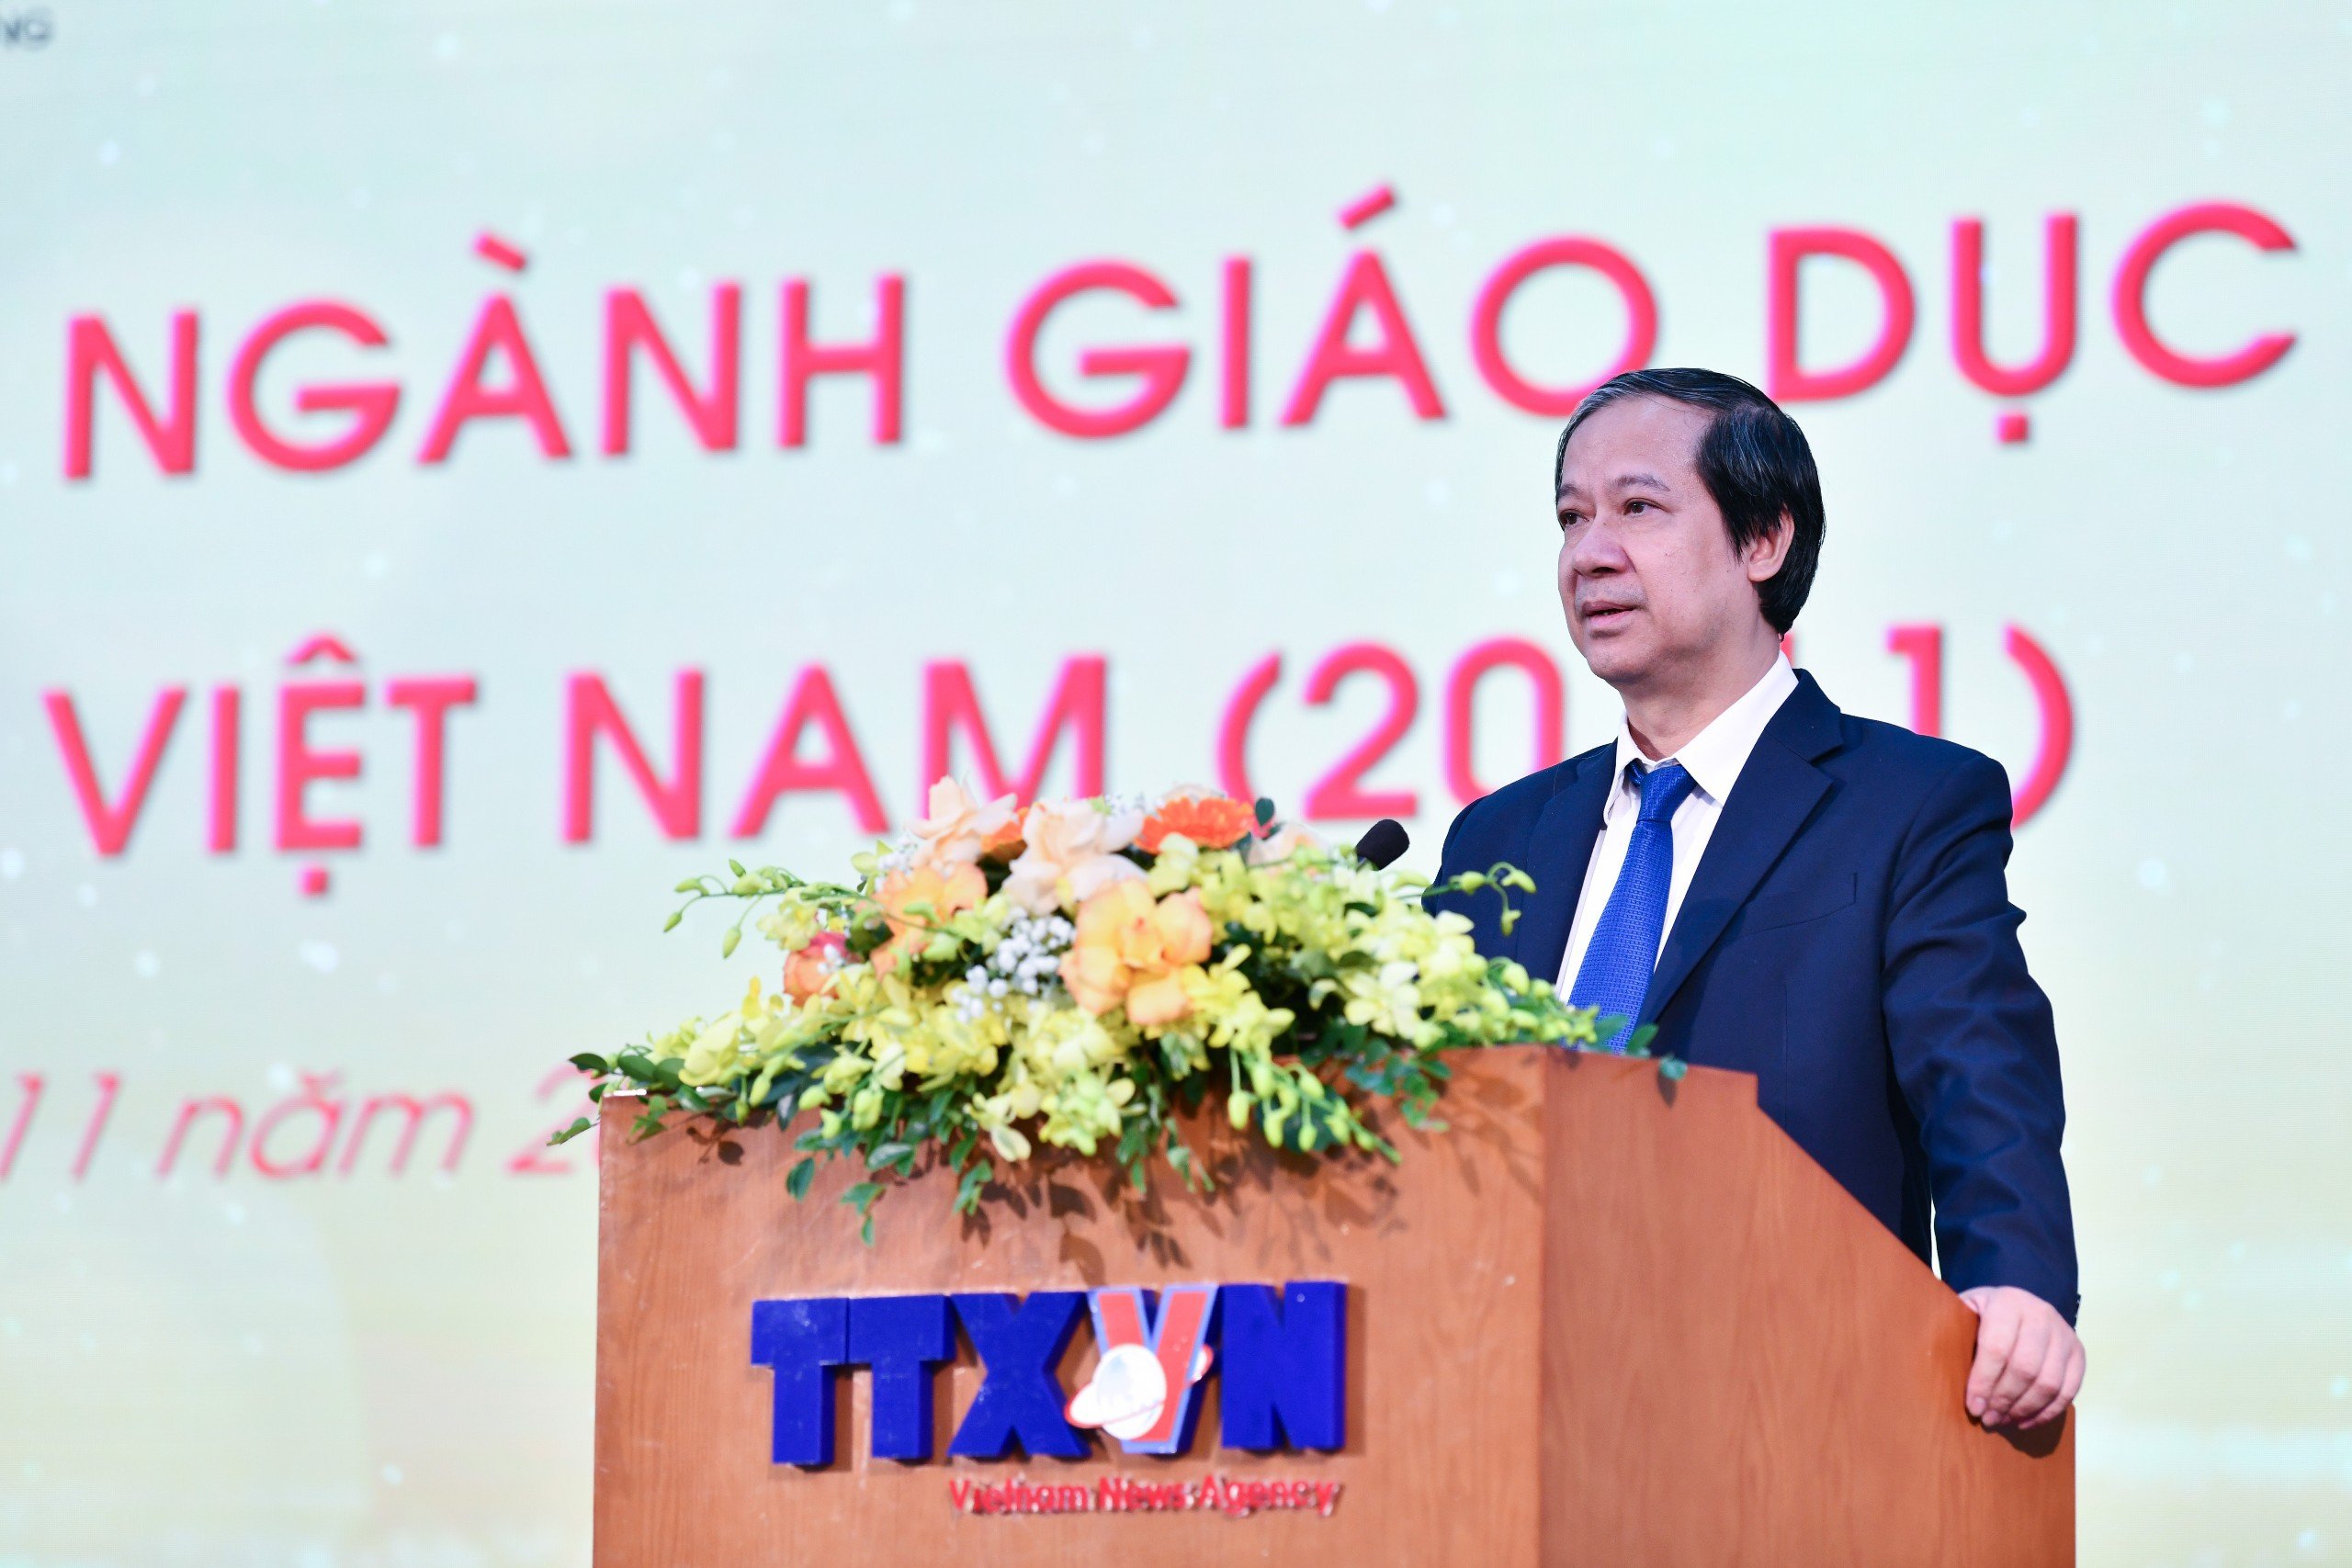 Bộ trưởng Nguyễn Kim Sơn phát biểu tại Chương trình gặp mặt, tri ân cán bộ đang công tác trong ngành Giáo dục nhân ngày Nhà giáo Việt Nam.